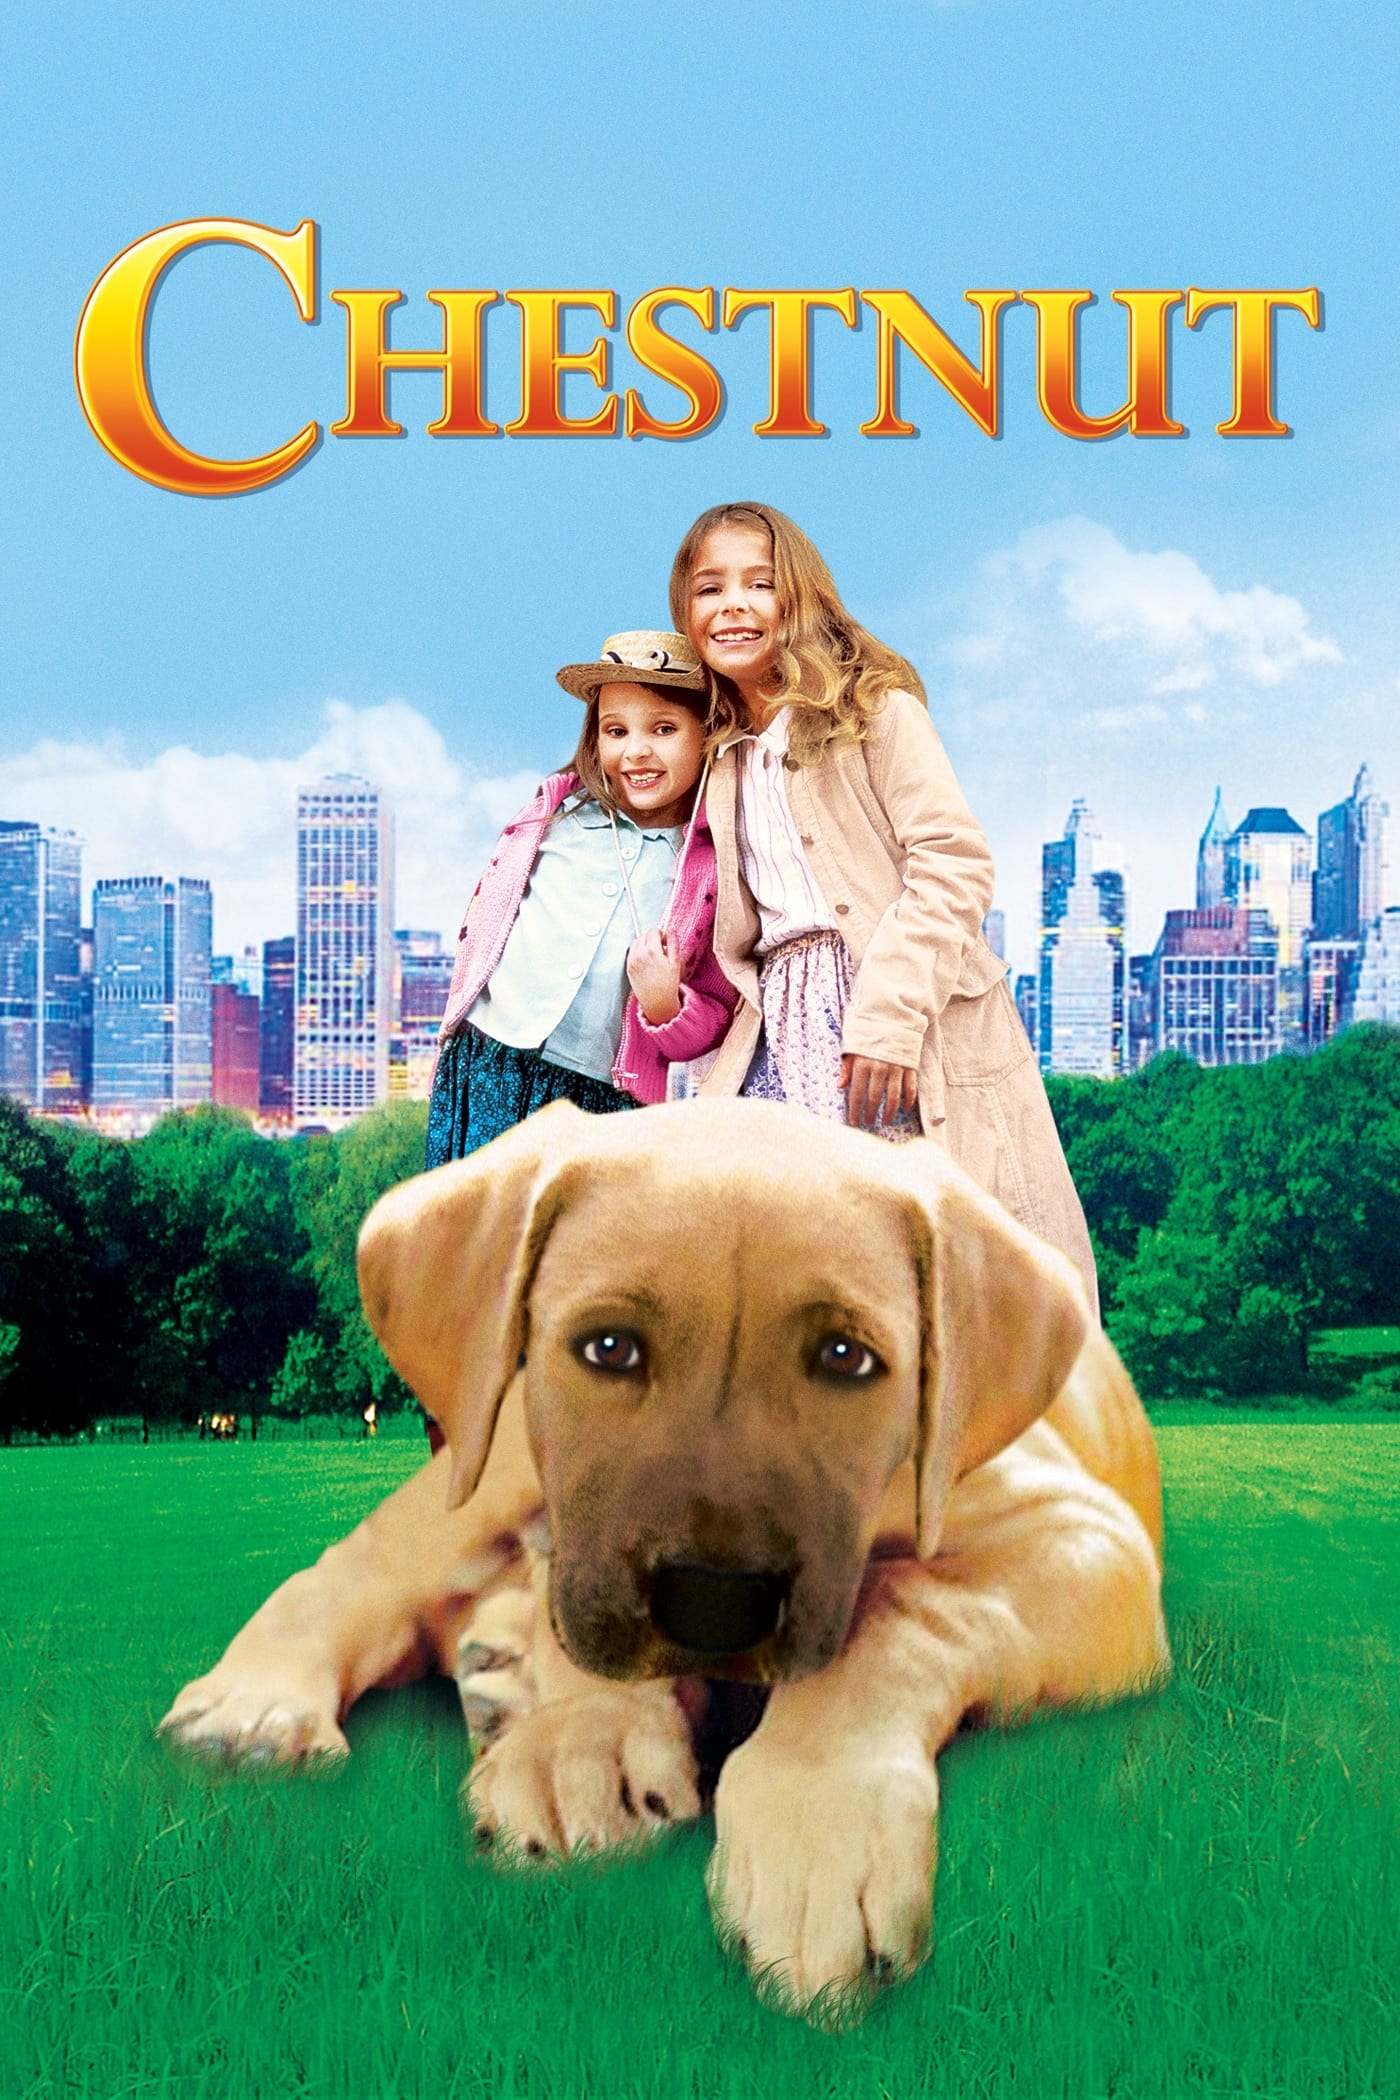 Chestnut: El héroe de Central Park (2004)